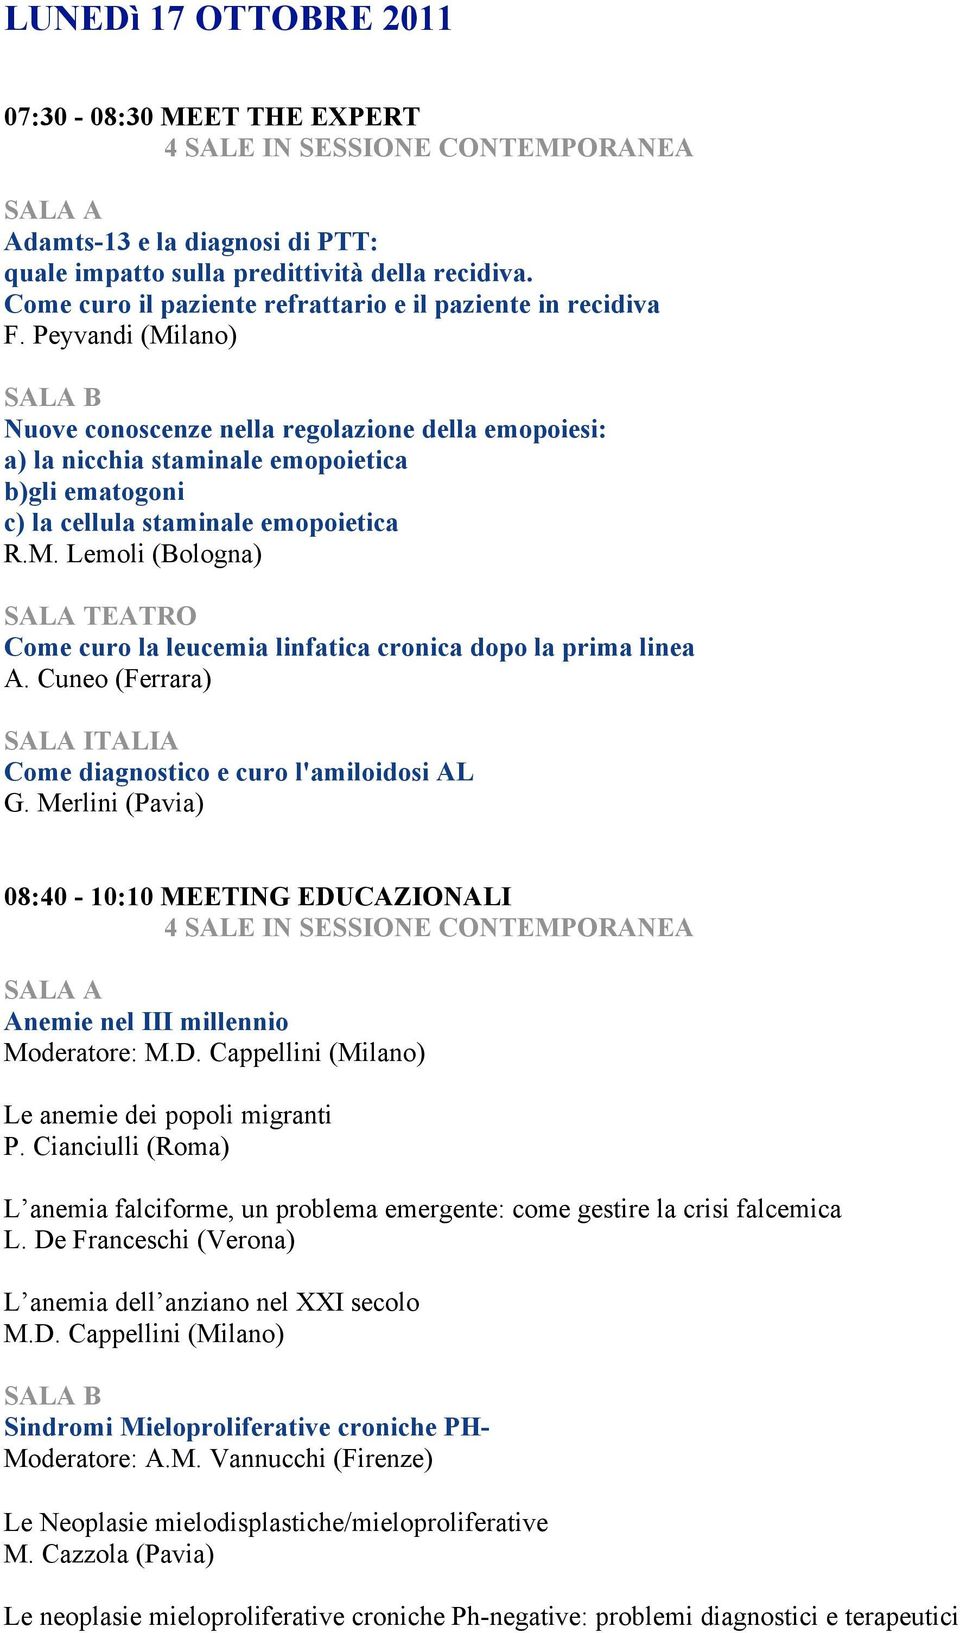 Cuneo (Ferrara) Come diagnostico e curo l'amiloidosi AL G. Merlini (Pavia) 08:40-10:10 MEETING EDUCAZIONALI Anemie nel III millennio Moderatore: M.D. Cappellini (Milano) Le anemie dei popoli migranti P.